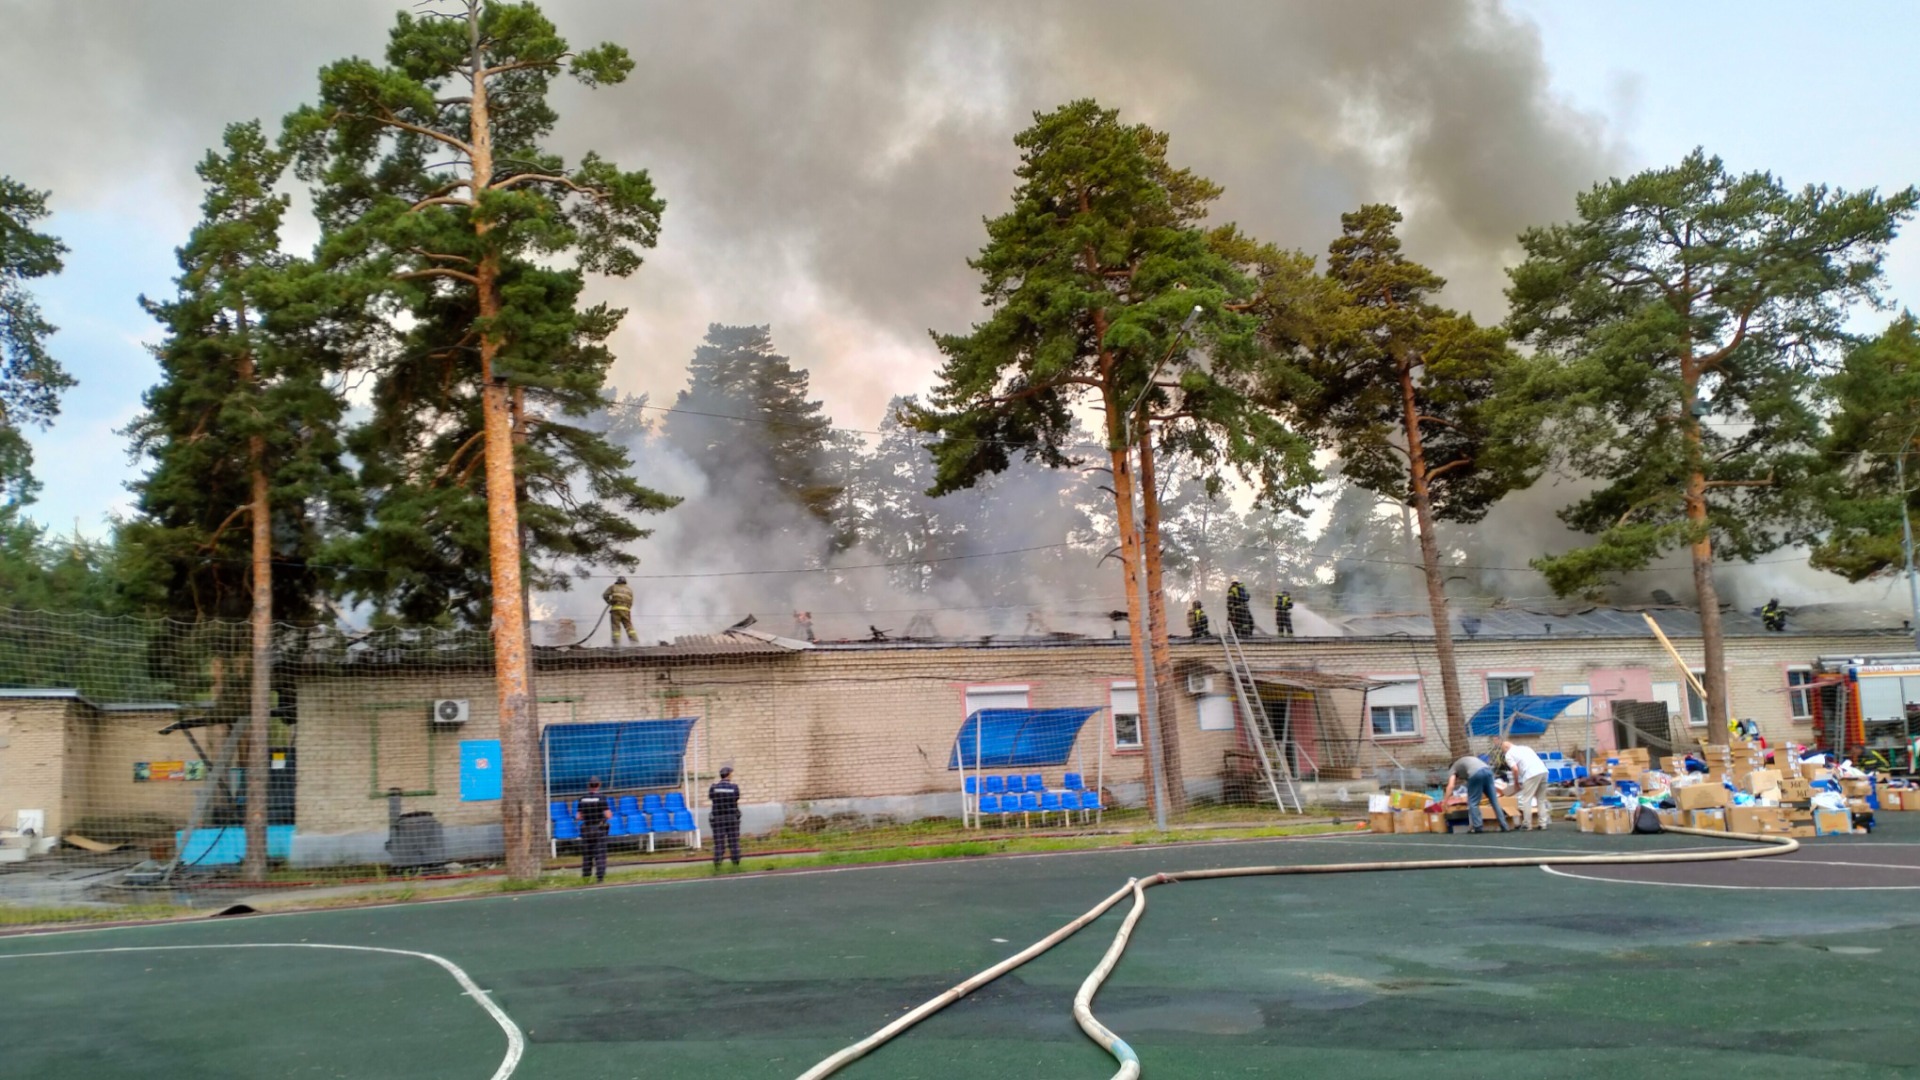 Пожар 4 августа на территории спорткомплекса в сосновом бору Челябинска